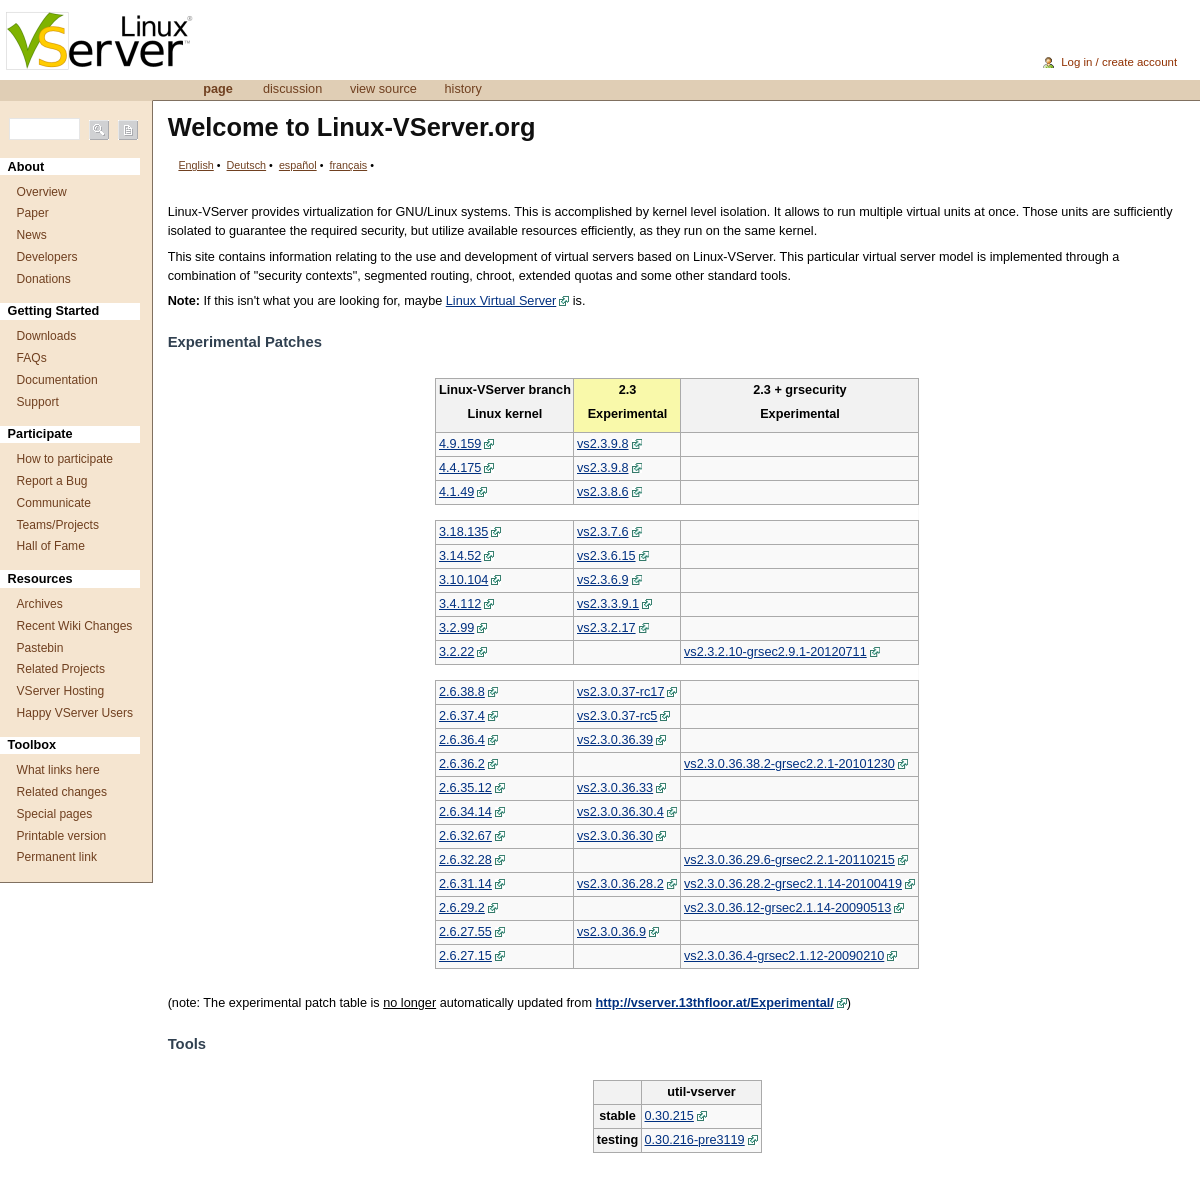 A complete backup of linux-vserver.org